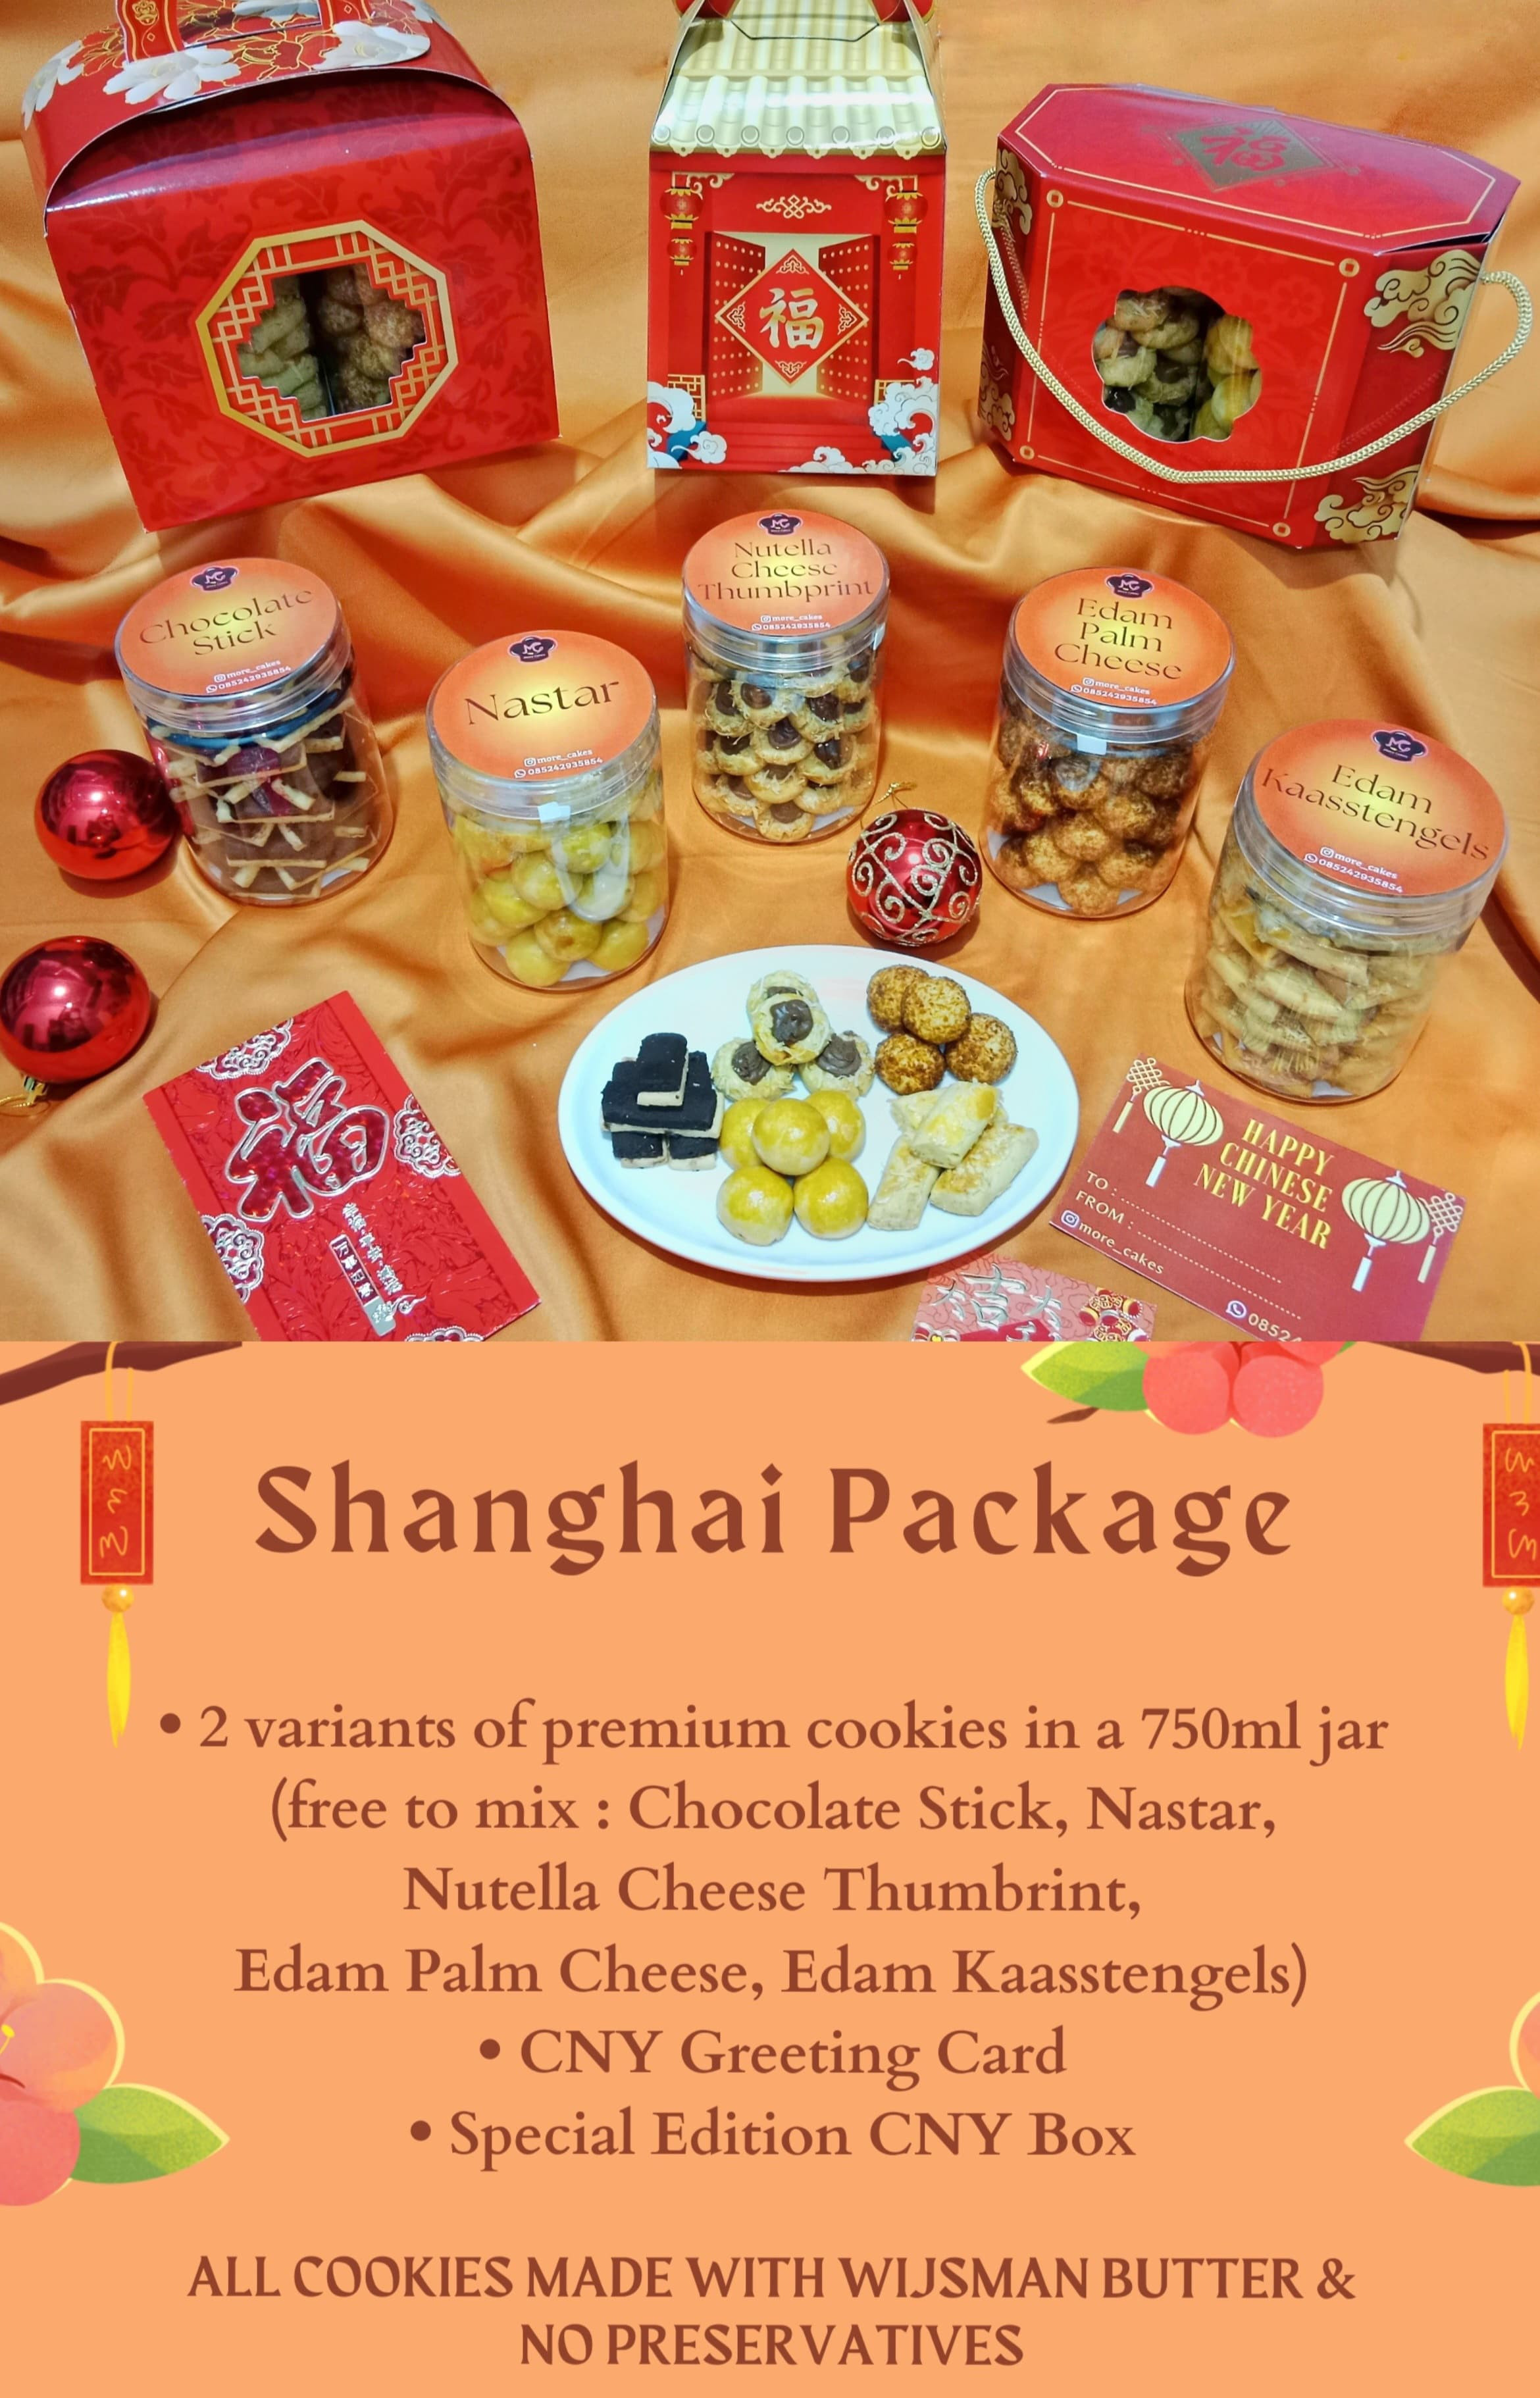 Shanghai Package